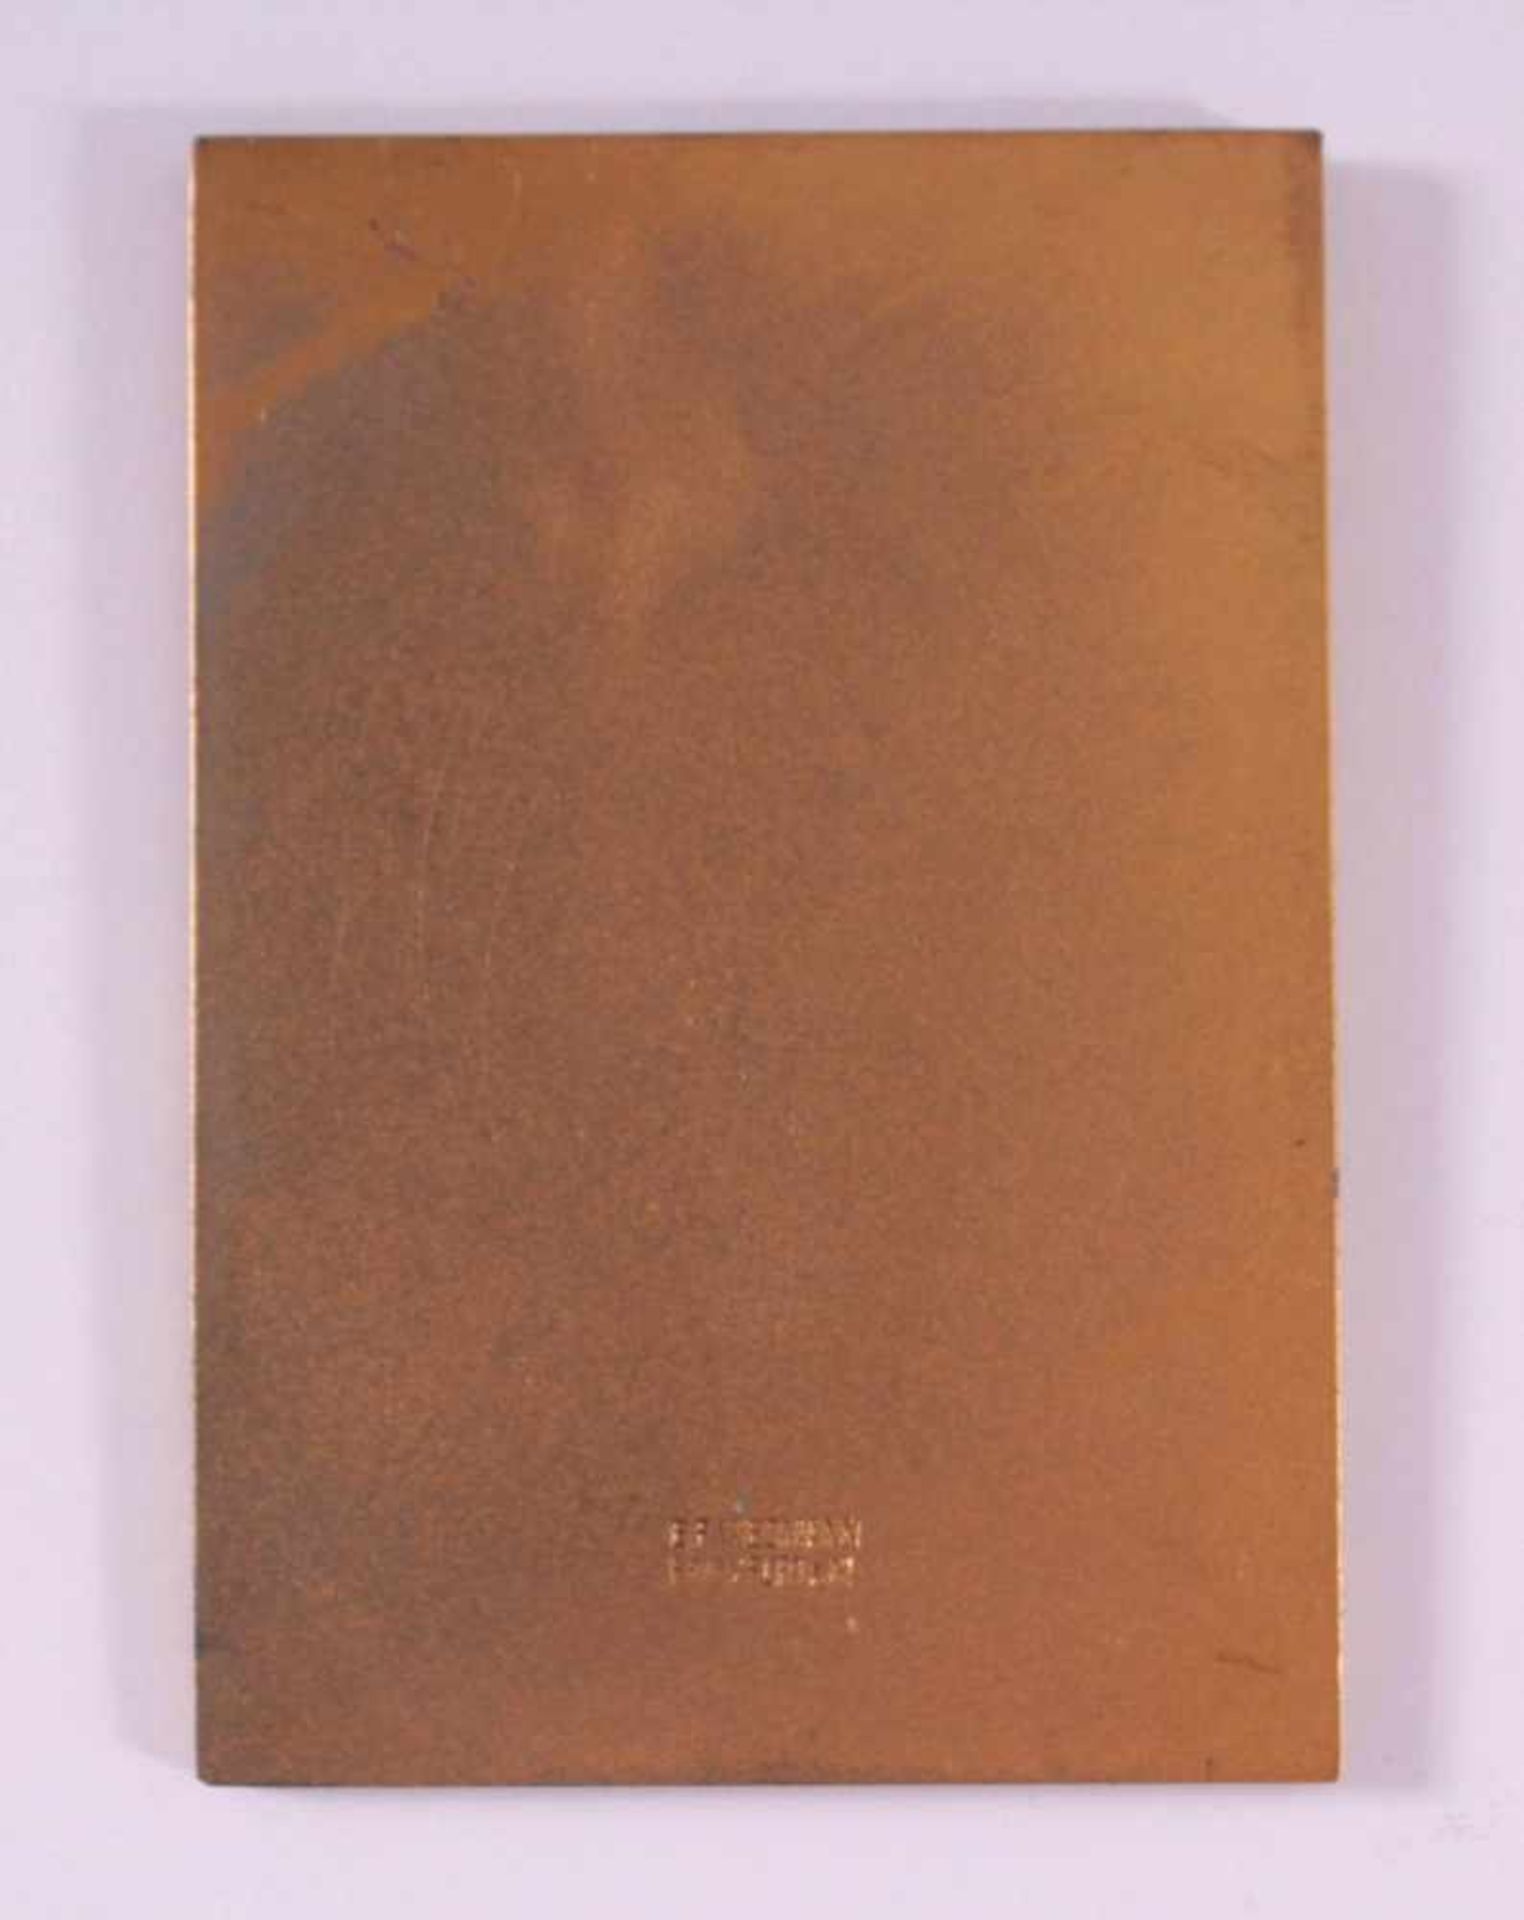 Vergoldete Plakette, Großer Preis IKA 19373. Internationale Kochkunst-Ausstellung, Frankfurt am - Bild 2 aus 3